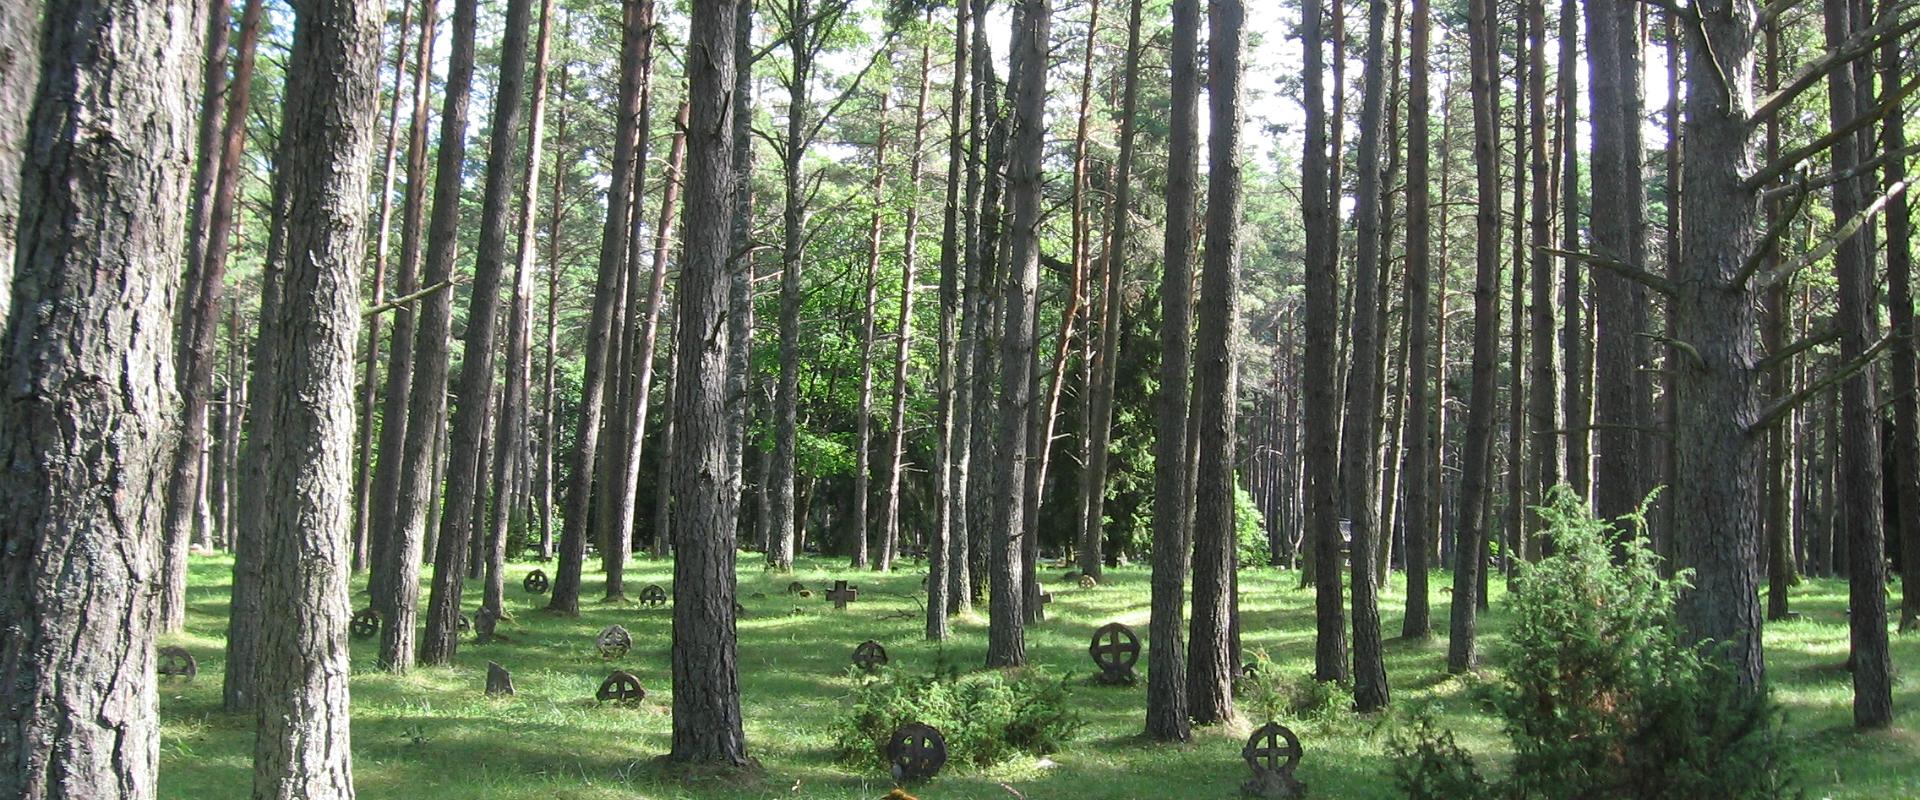 Vormsi Cemetery